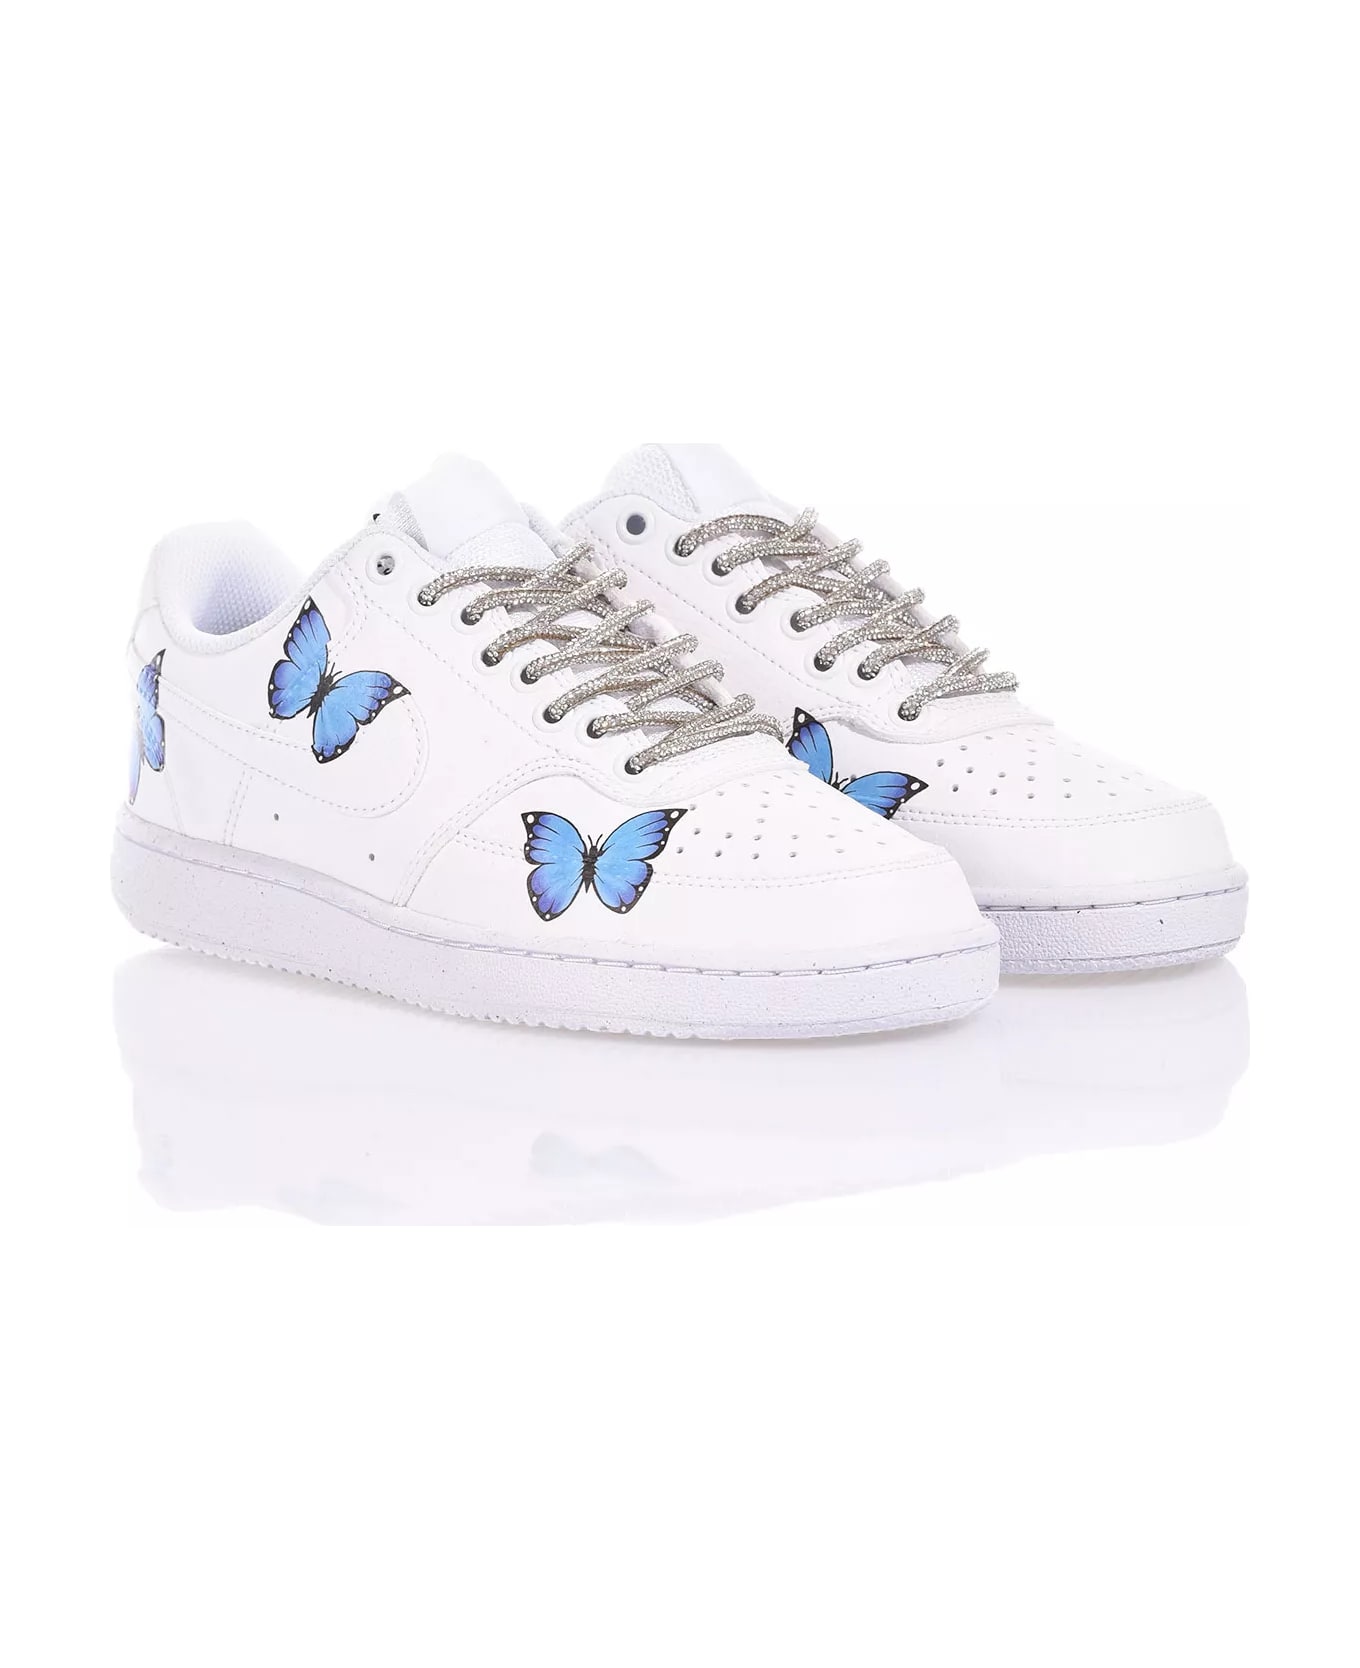 Mimanera Nike Butterfly Blue Custom